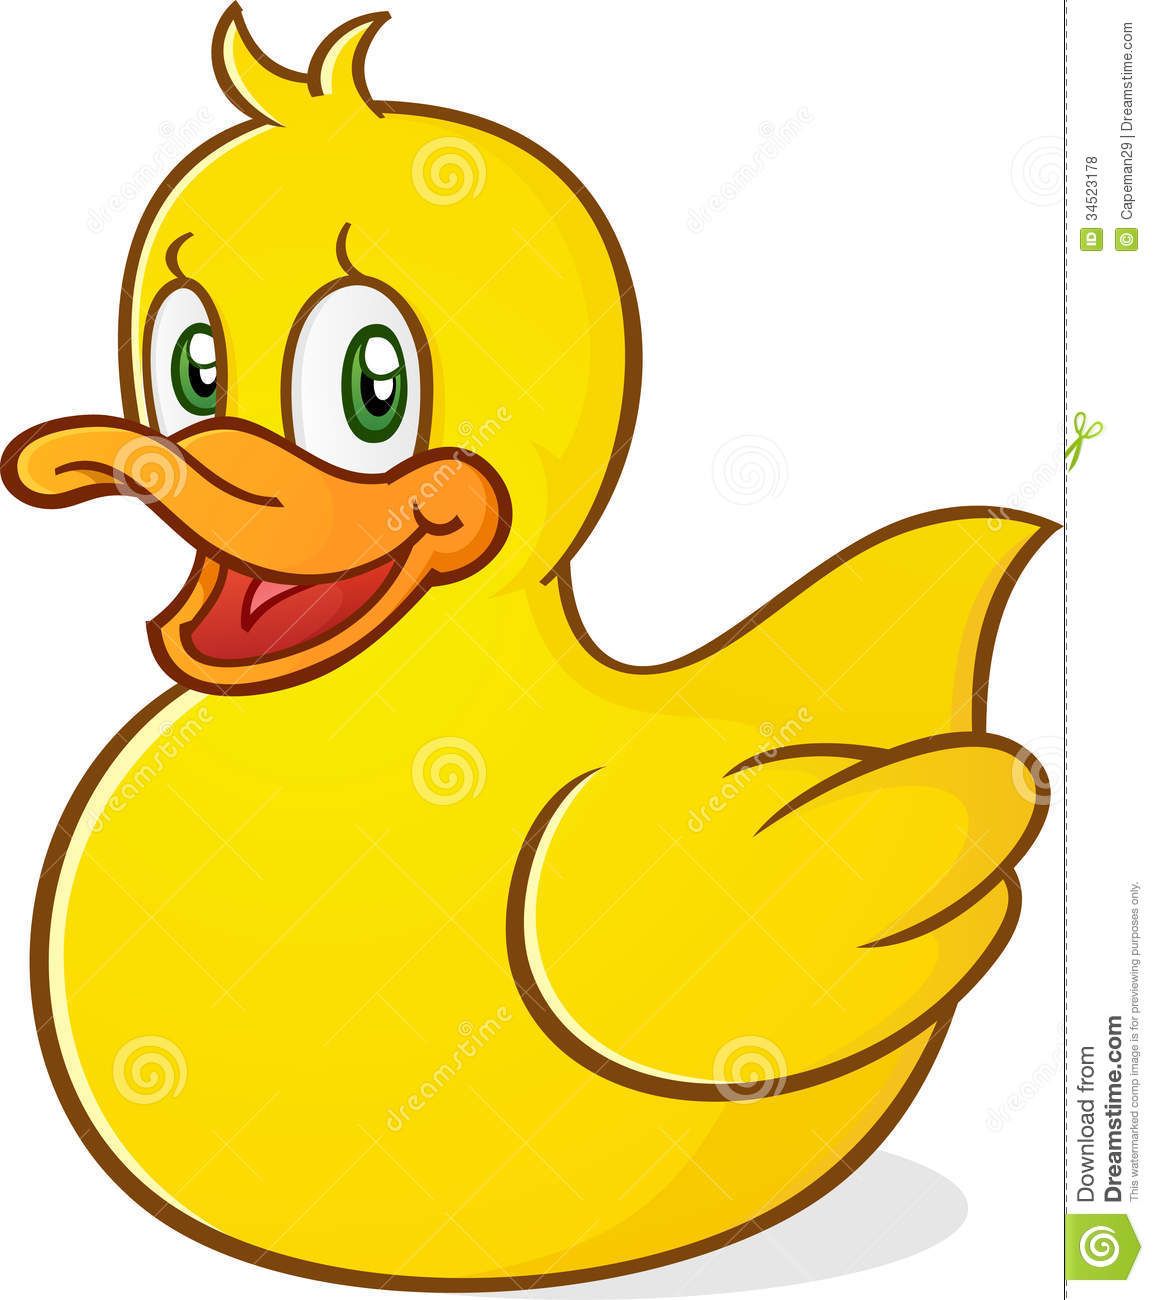 Clipart duck cartoon duck. Cute rubber yellow ducky